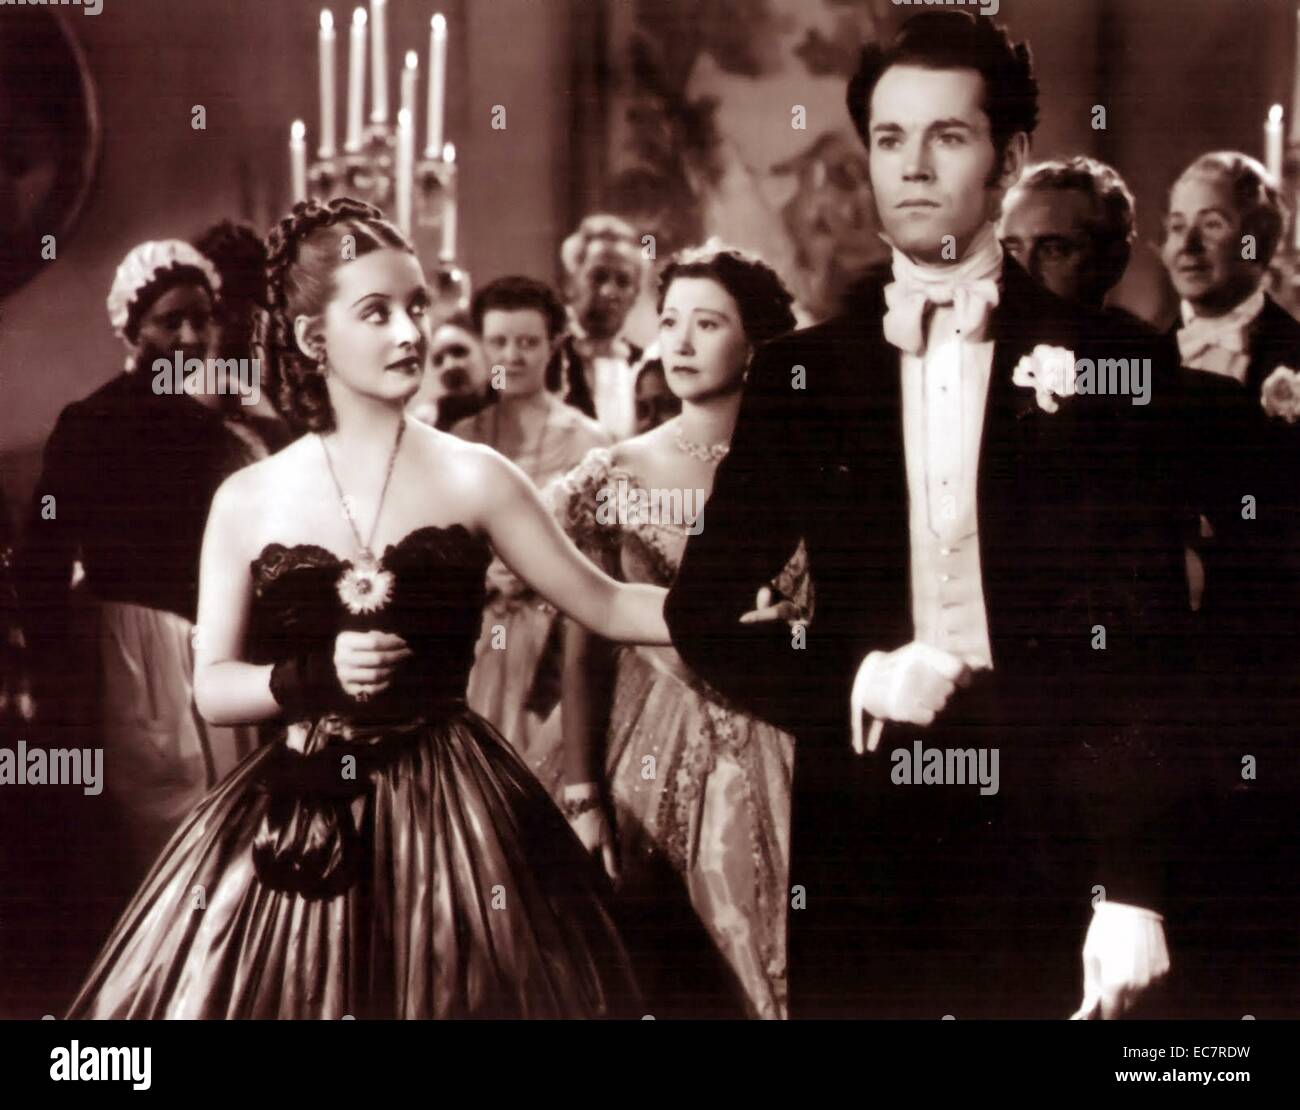 Jezebel è un 1938 American dramma romantico film diretto da William Wyler. Si racconta la storia di una donna del Sud le cui azioni costo lei l'uomo che ama. Interpretato da Bette Davis e Henry Fonda. Foto Stock